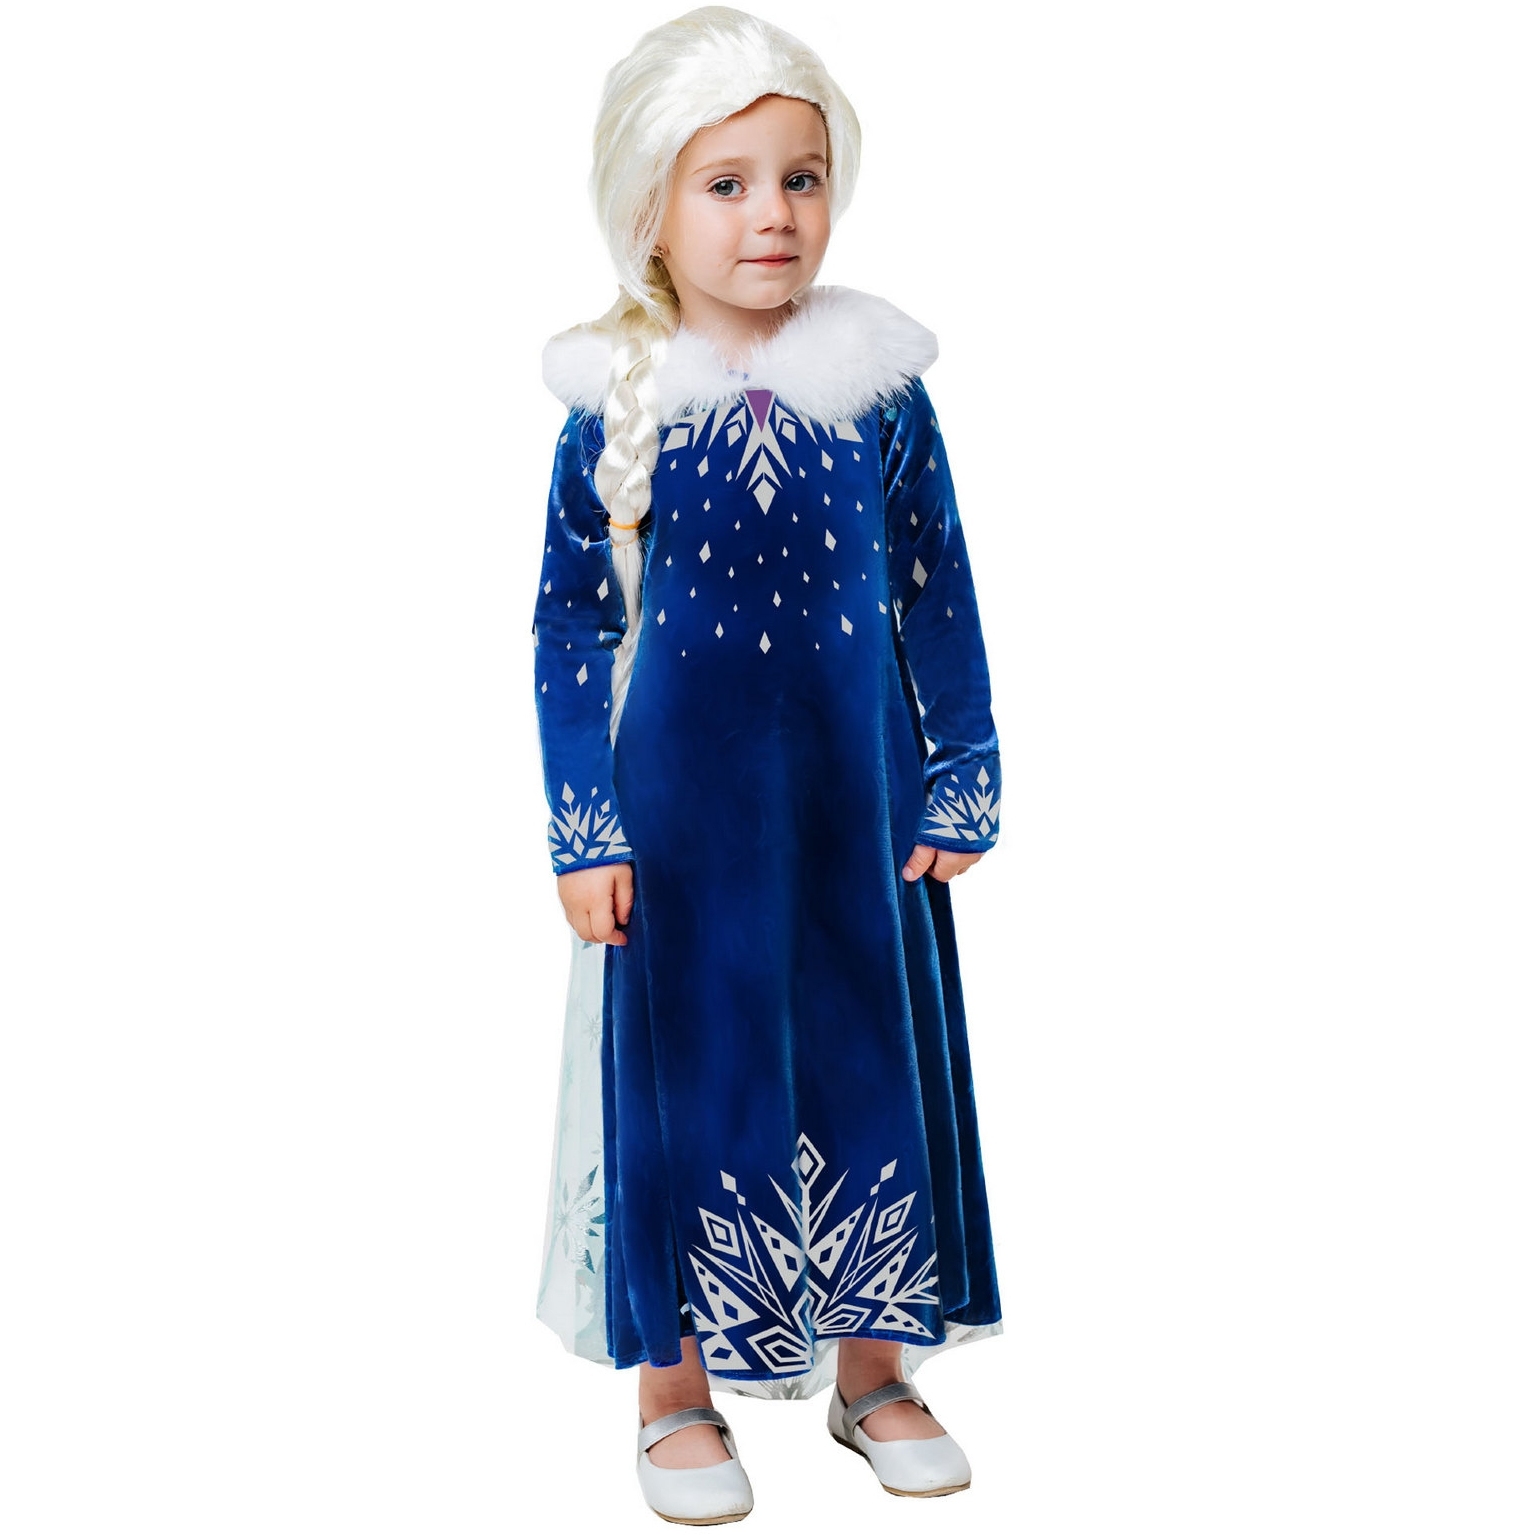 Карнавальный костюм "Эльза зимнее платье" (платье с накидкой, парик) размер 134-68